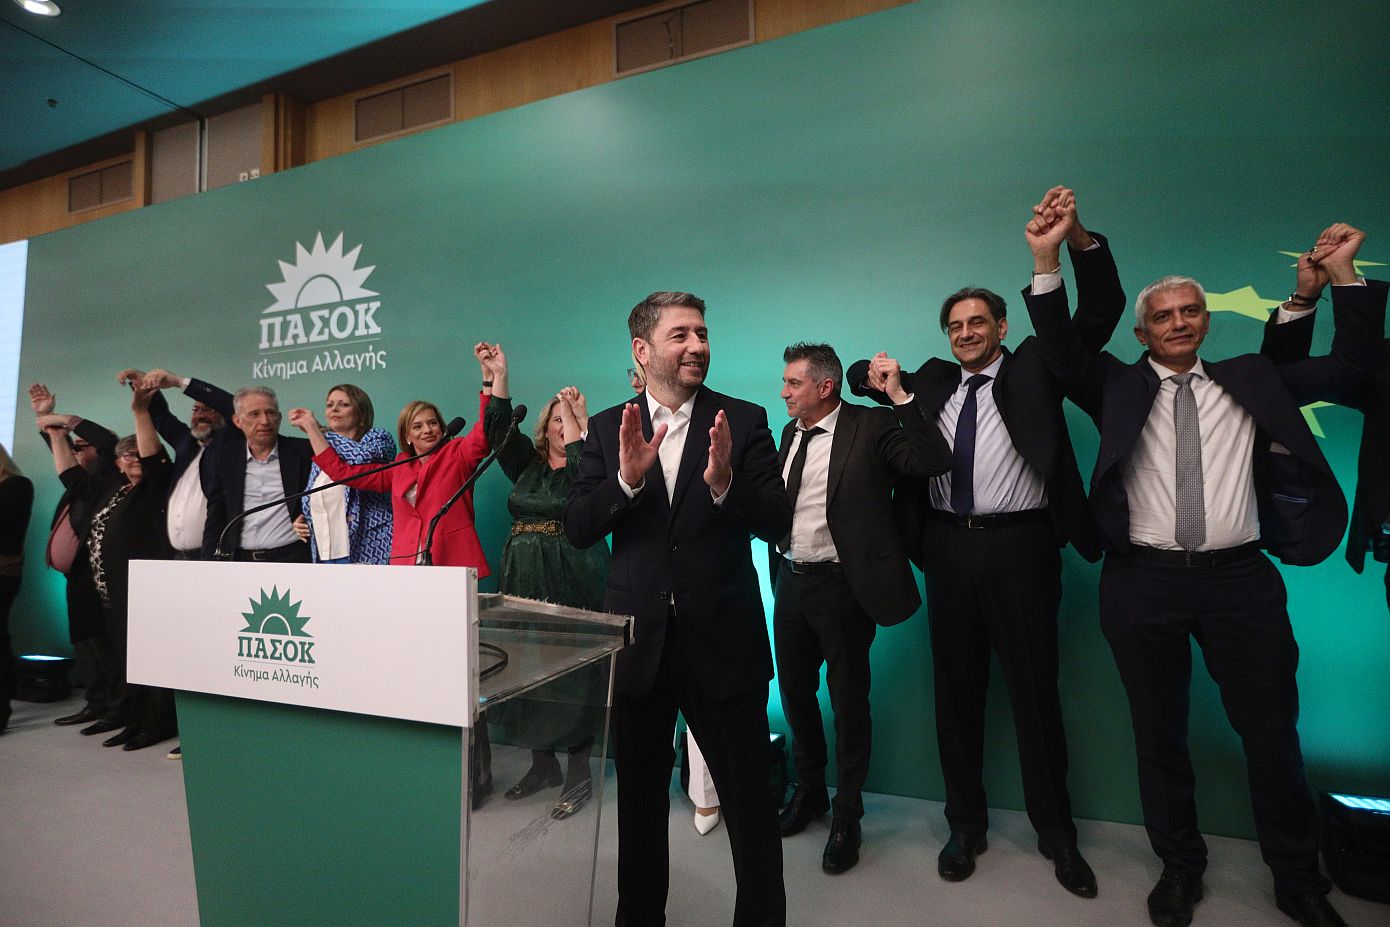 Ανακοινώθηκε το ψηφοδέλτιο του ΠΑΣΟΚ για τις ευρωεκλογές &#8211; Ζαγοράκης, Καλλιακμάνης και Βερούλη μεταξύ των υποψηφίων